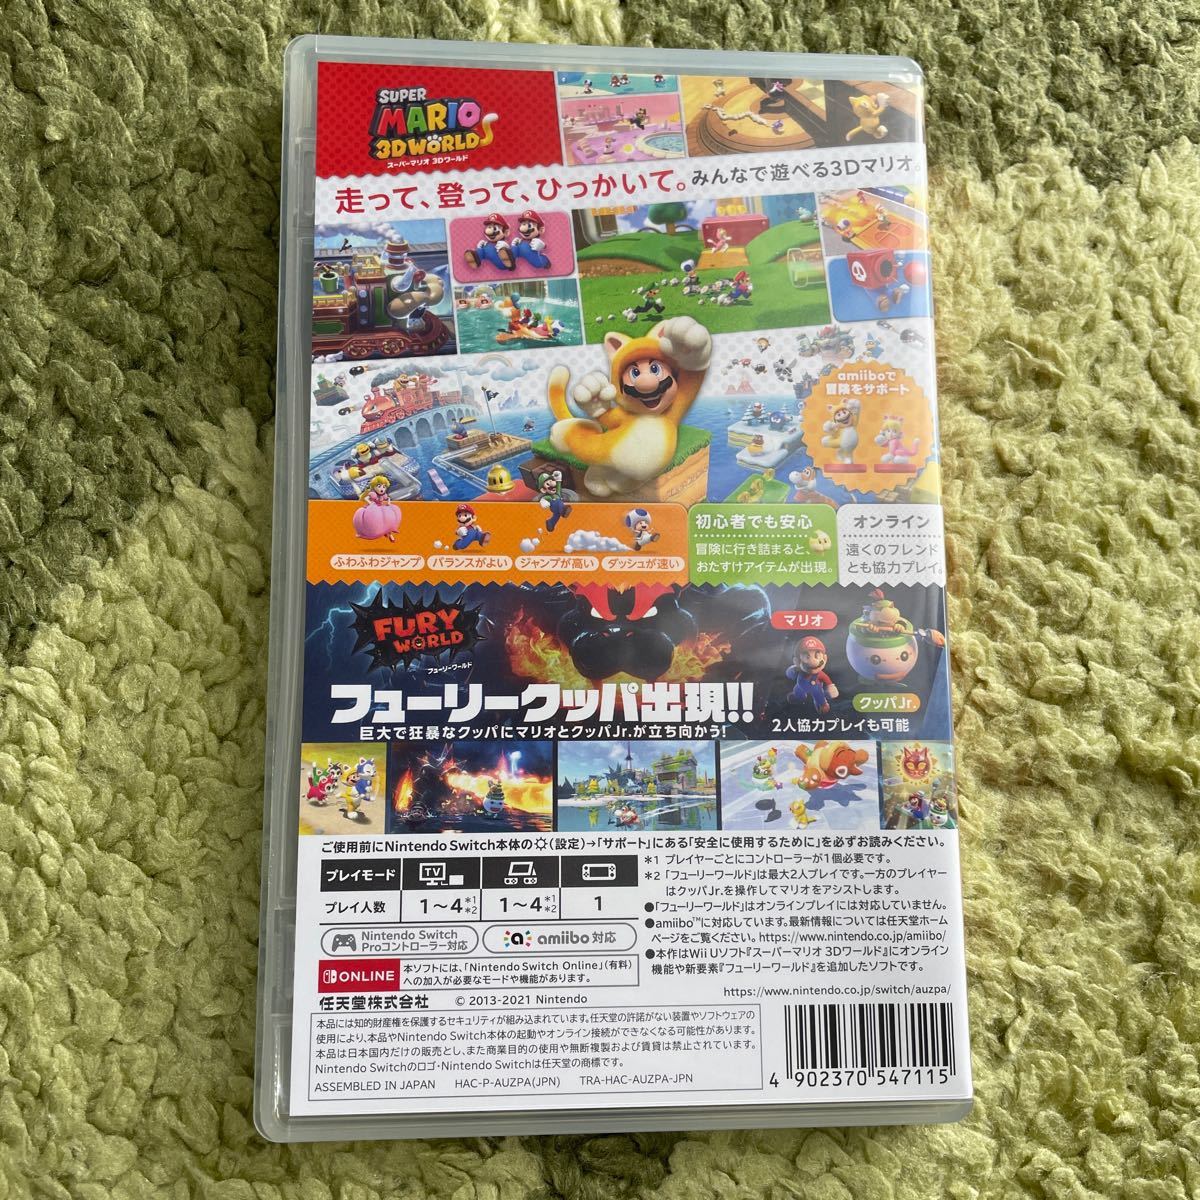 【Switch】 スーパーマリオ 3Dワールド＋フューリーワールド